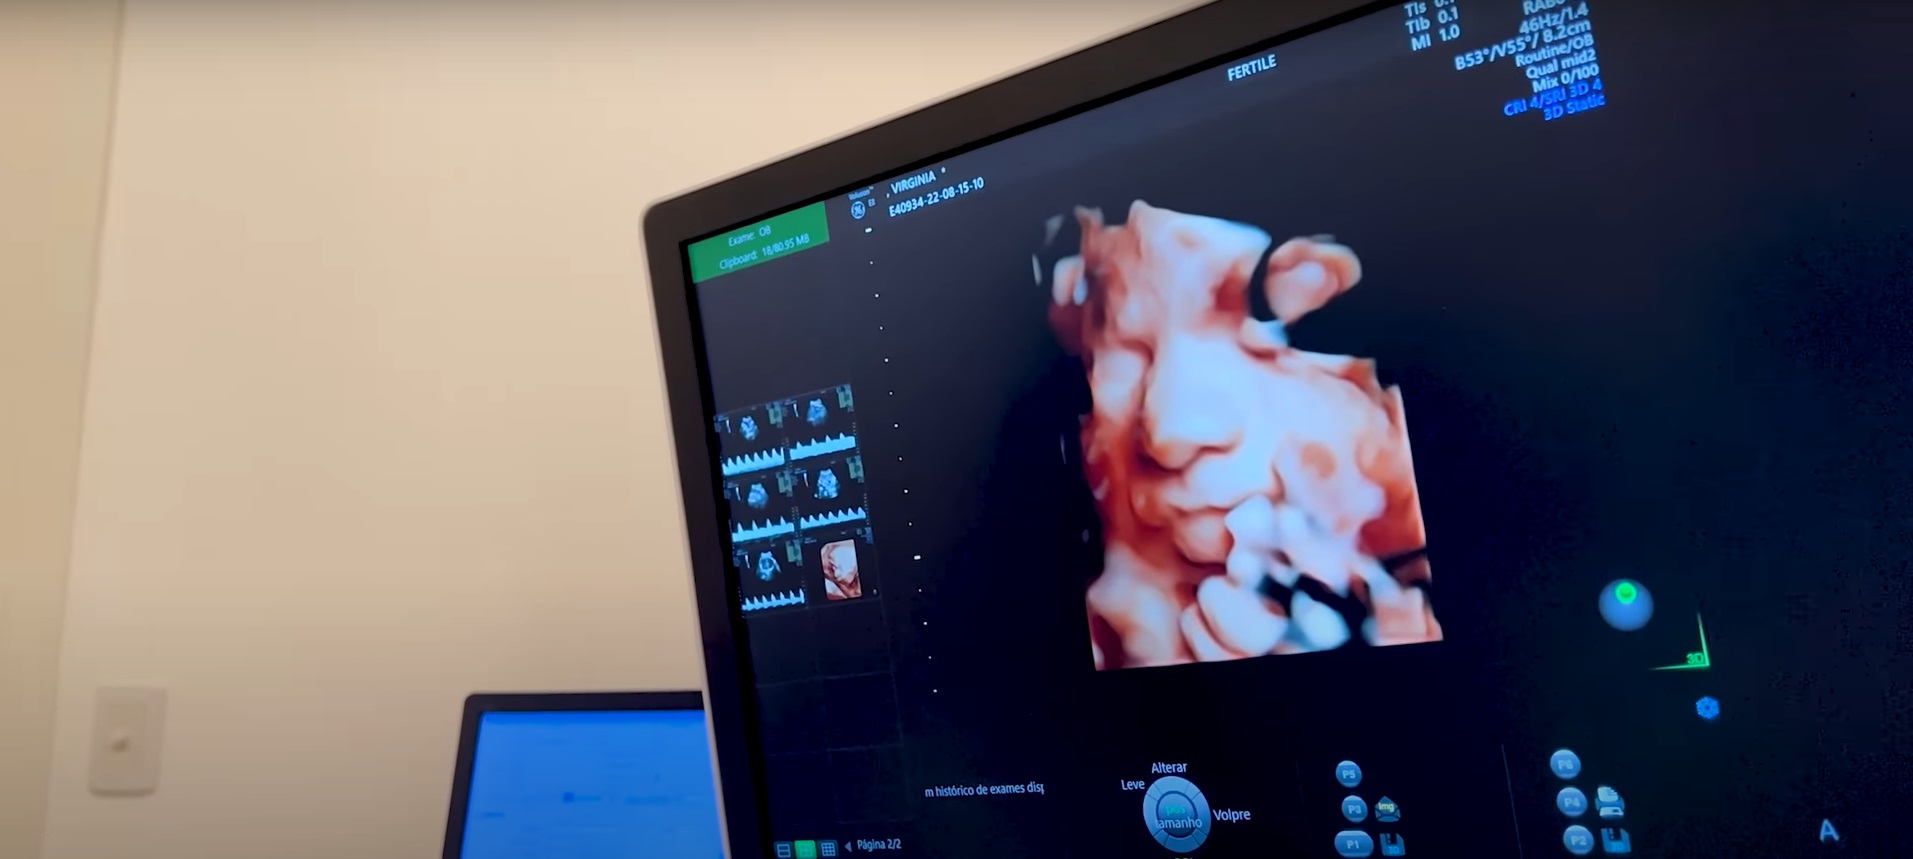 Virgínia Fonseca mostra rostinho da caçula em ultrassom 3D: "Parece a Maria Alice"